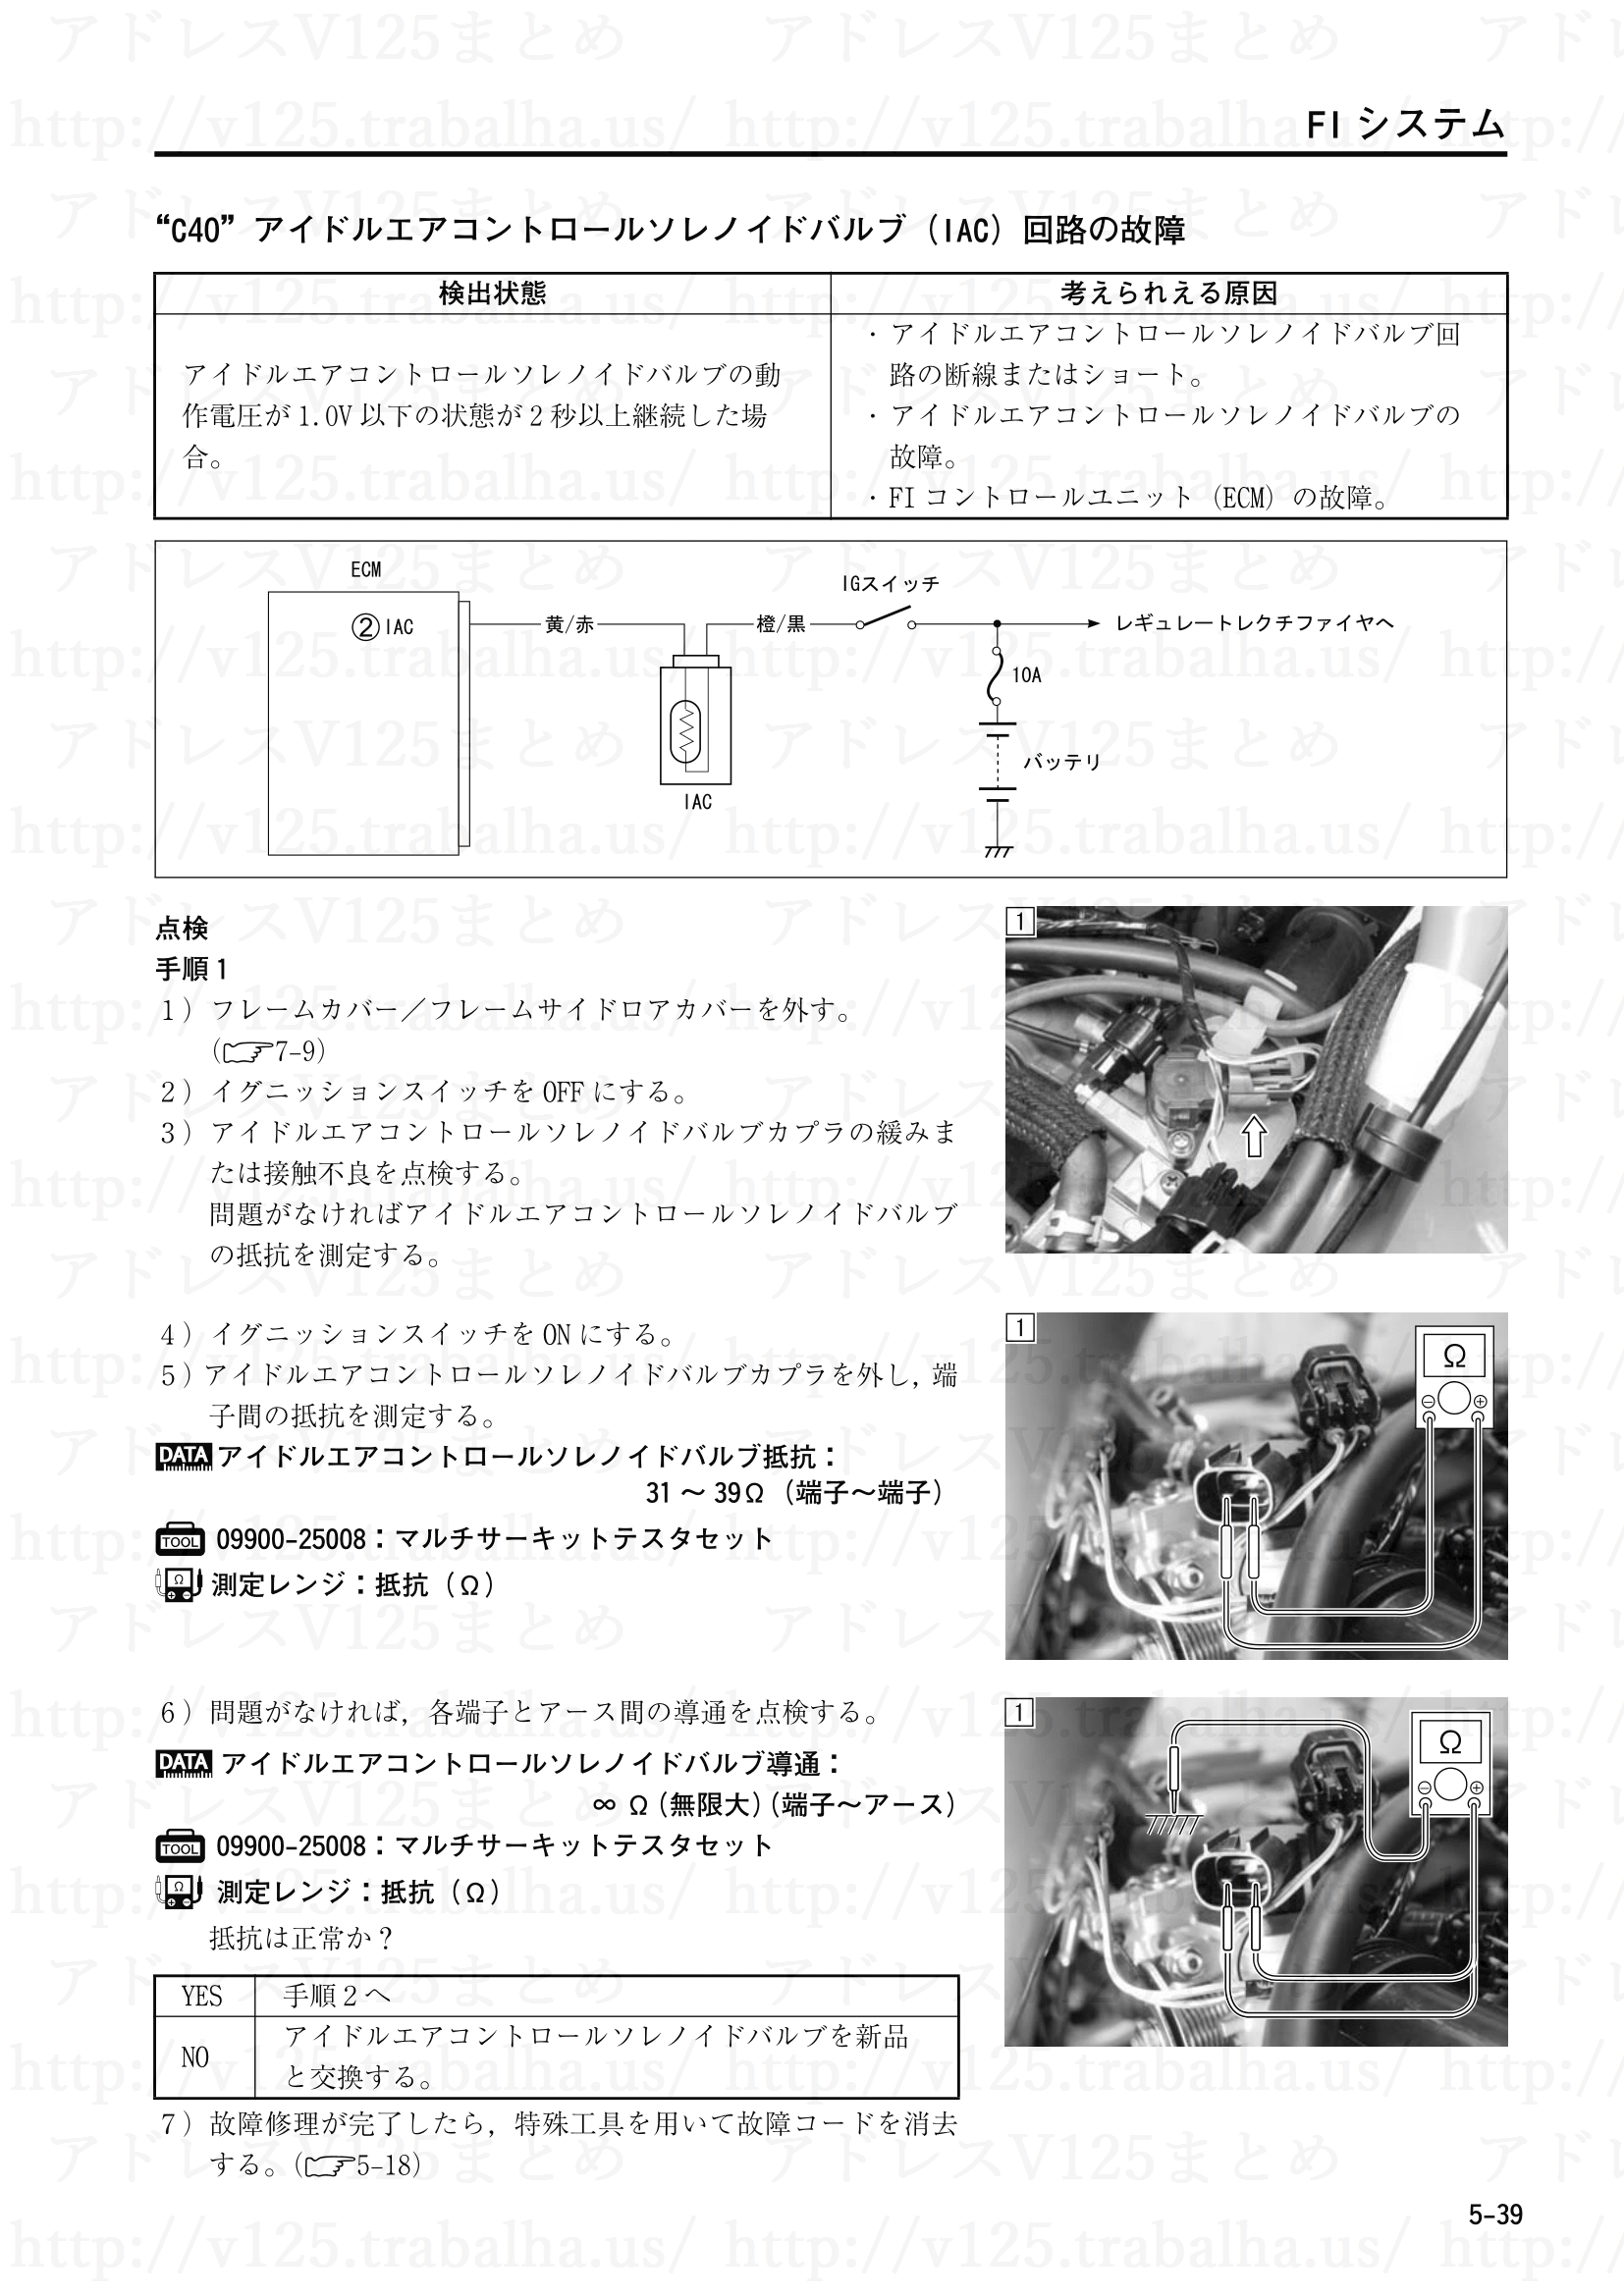 5-39【FIシステム】“C40”アイドルエアコントロールソレノイドバルブ(IAC)回路の故障